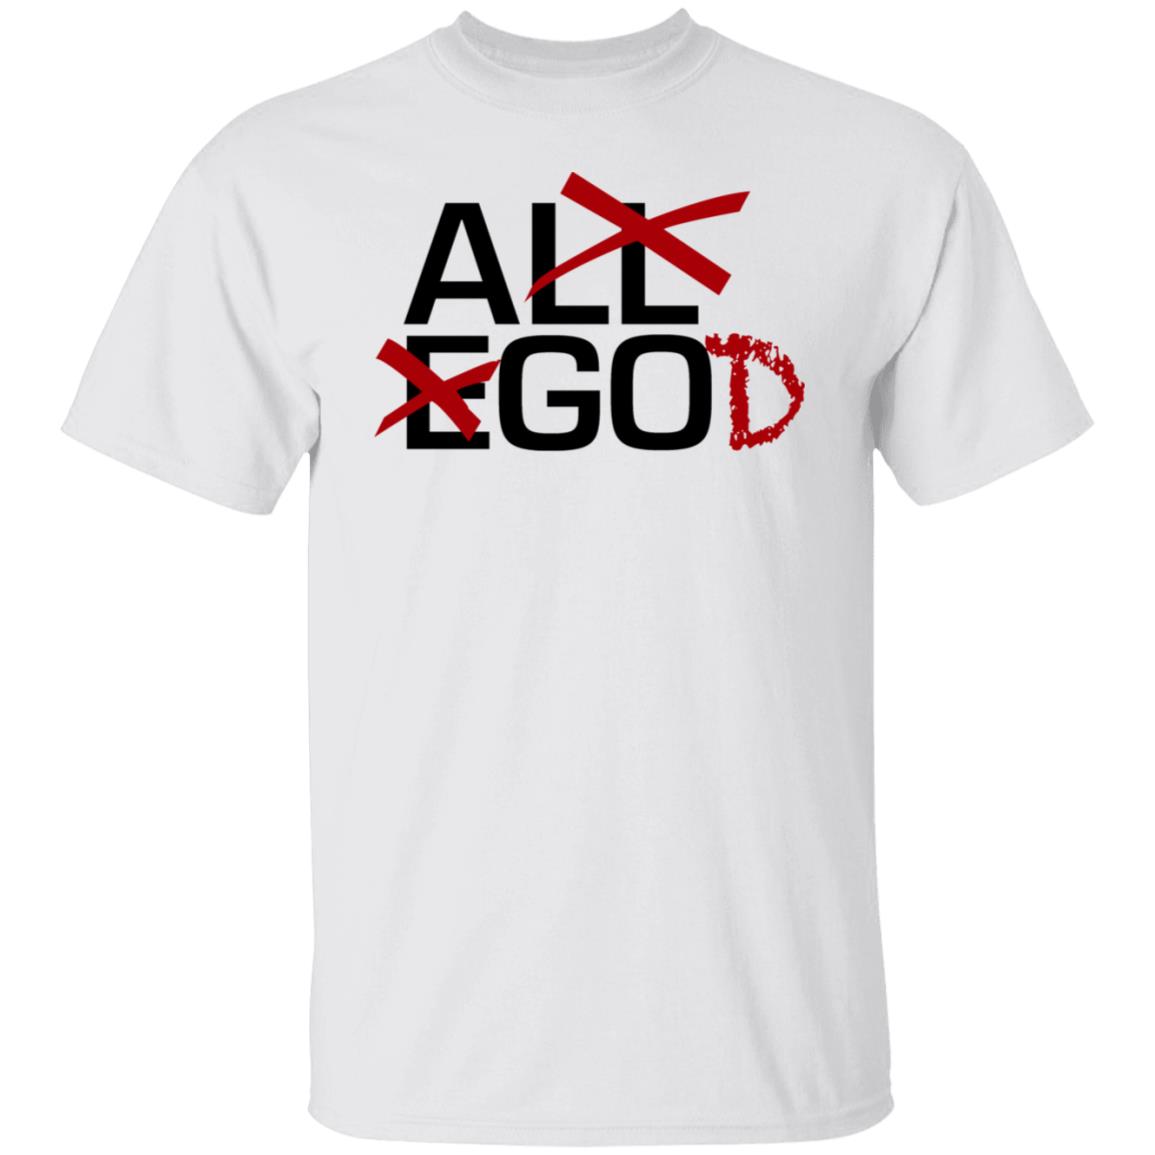 Prowrestlingtees Merch “All Ego” Ethan Page God Shirt